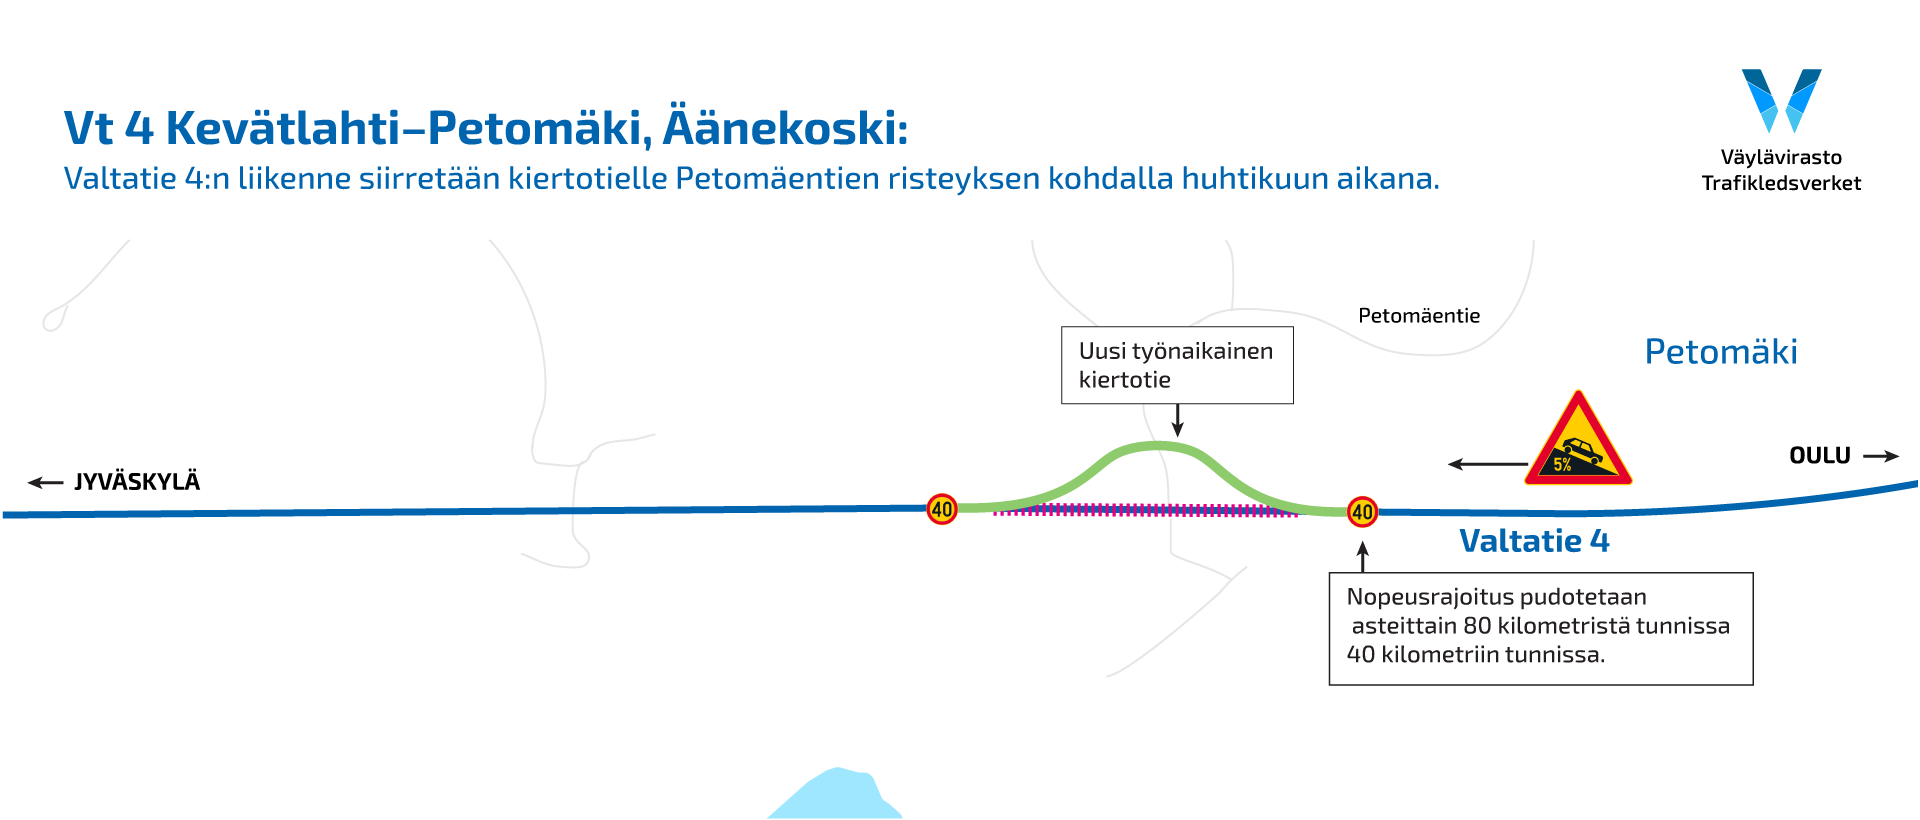 Kartta: Valtatie 4:n liikenne siirretään kiertotielle Äänekoskella Petomäentien risteyksen kohdalla.